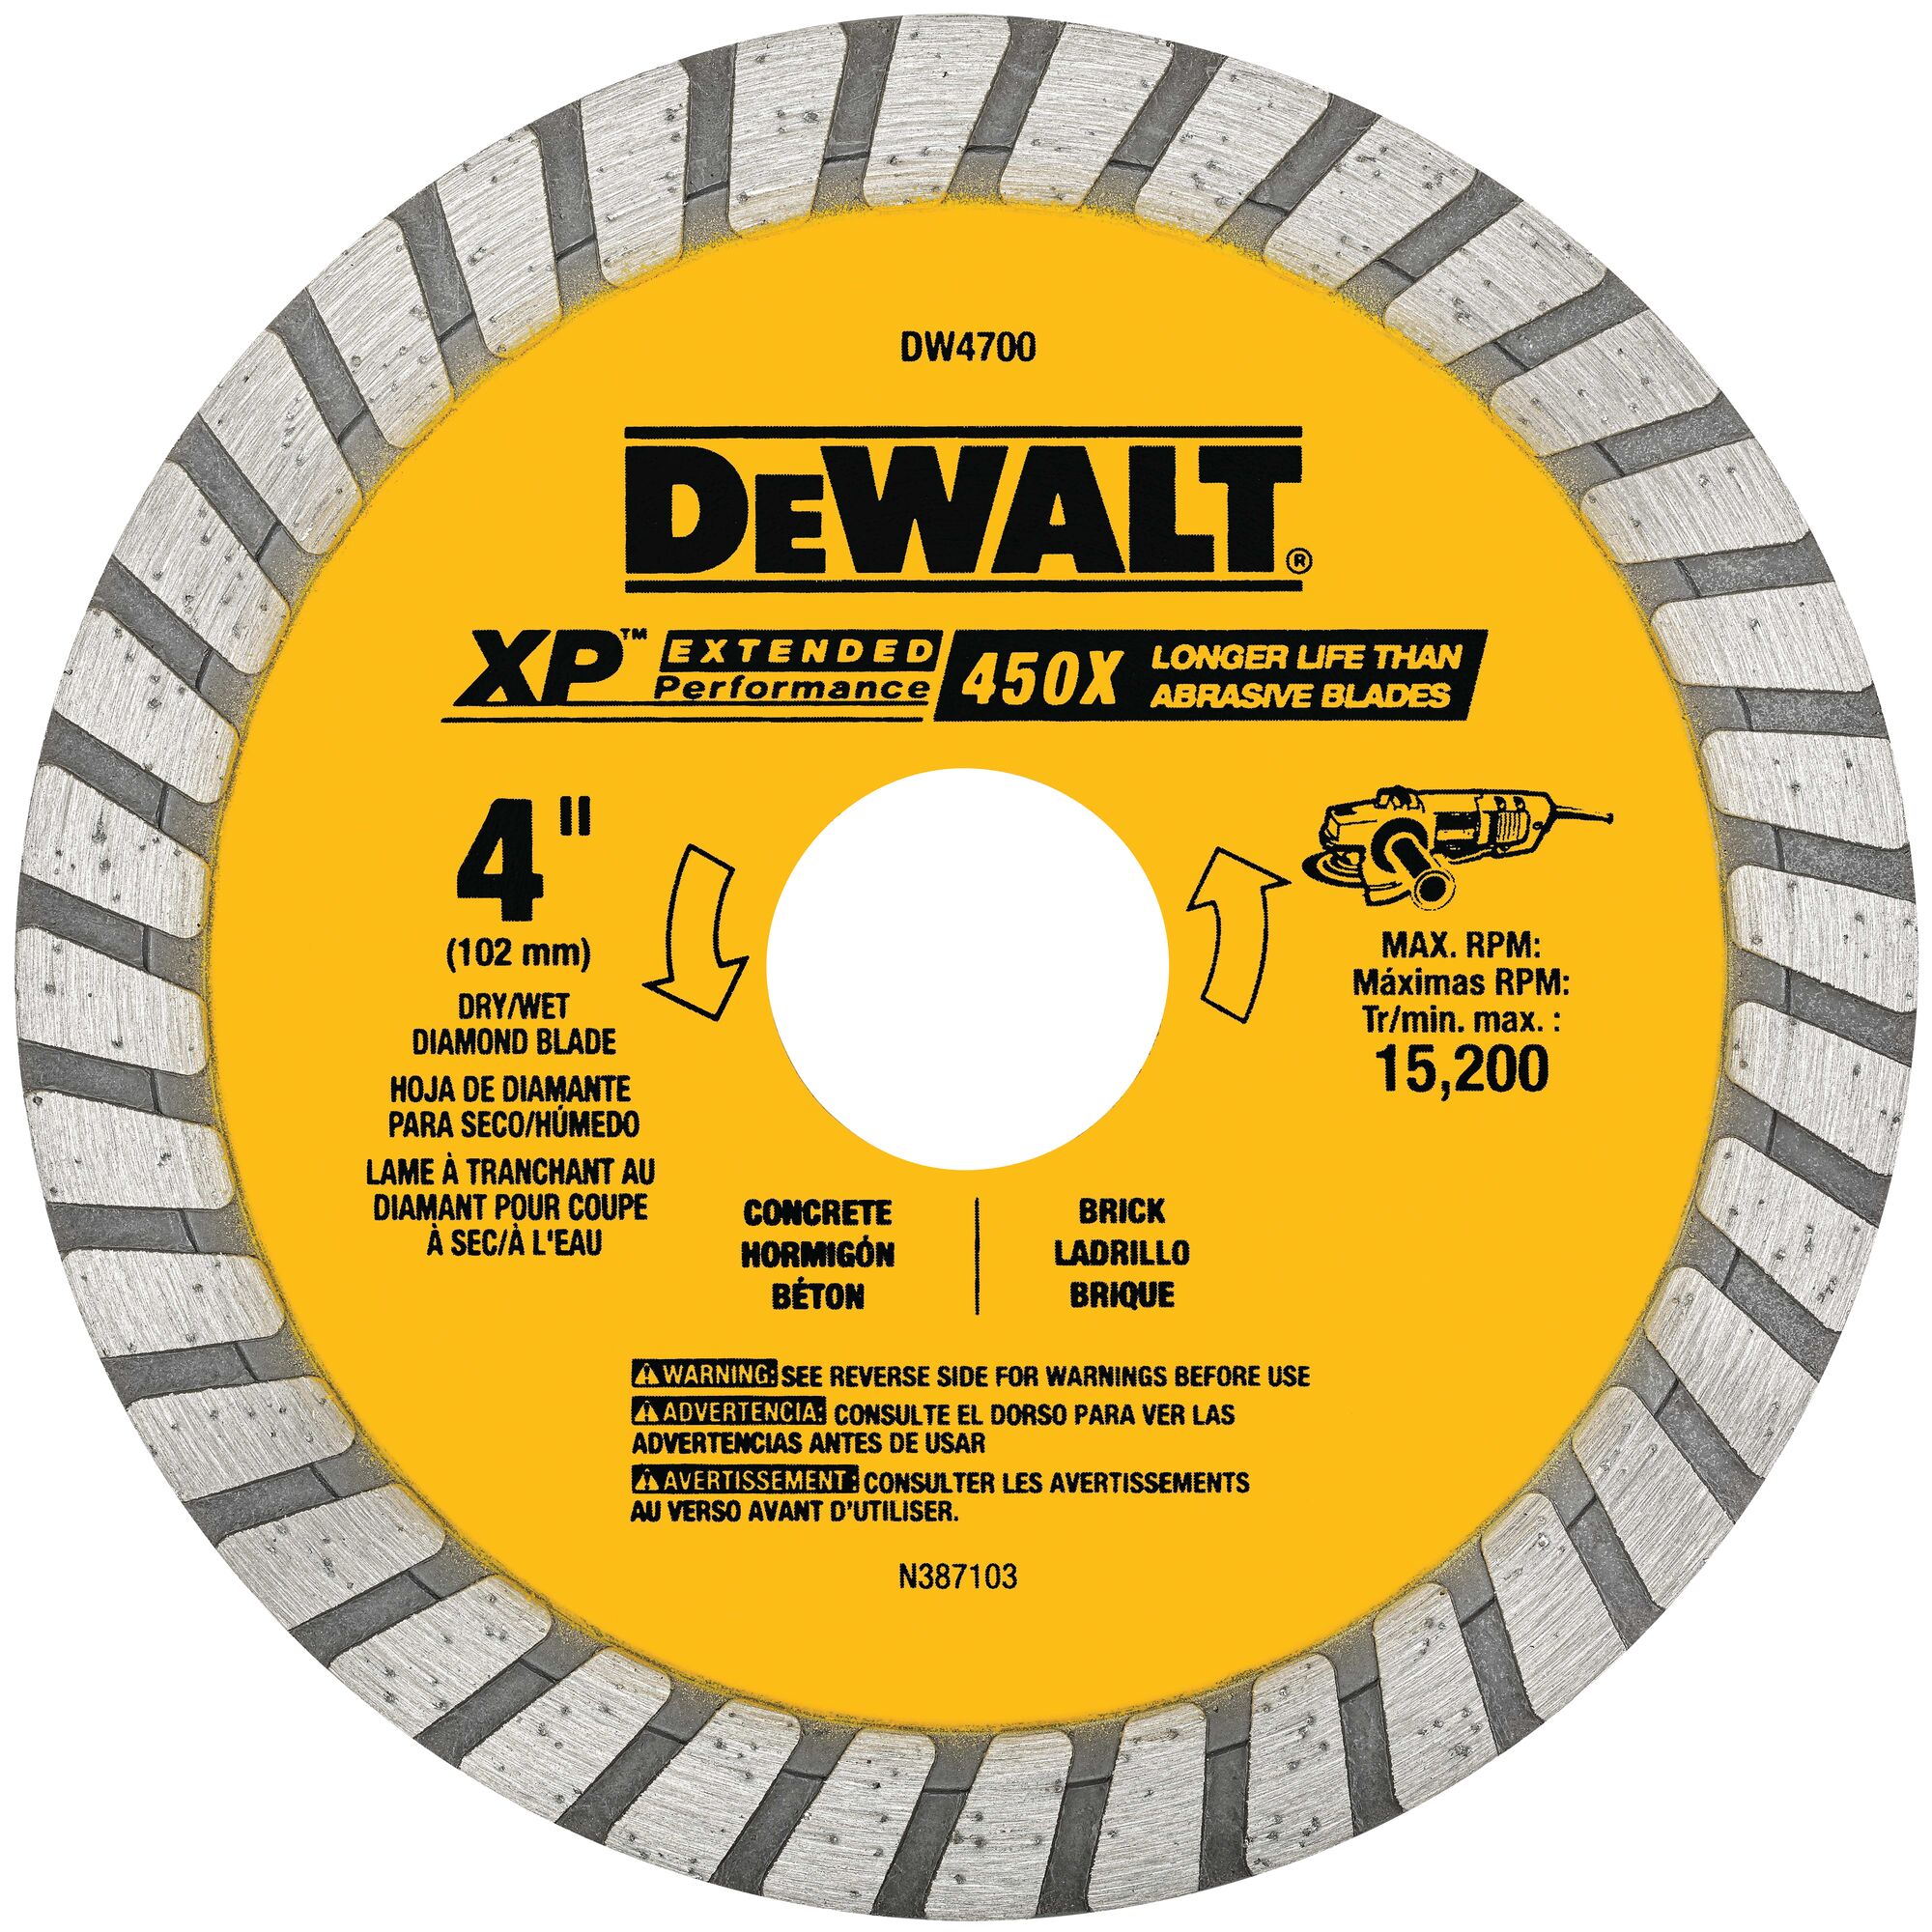 DW4729 NEW Dewalt 4" Continuous Rim Saw Blades XP Diamond ~DW 